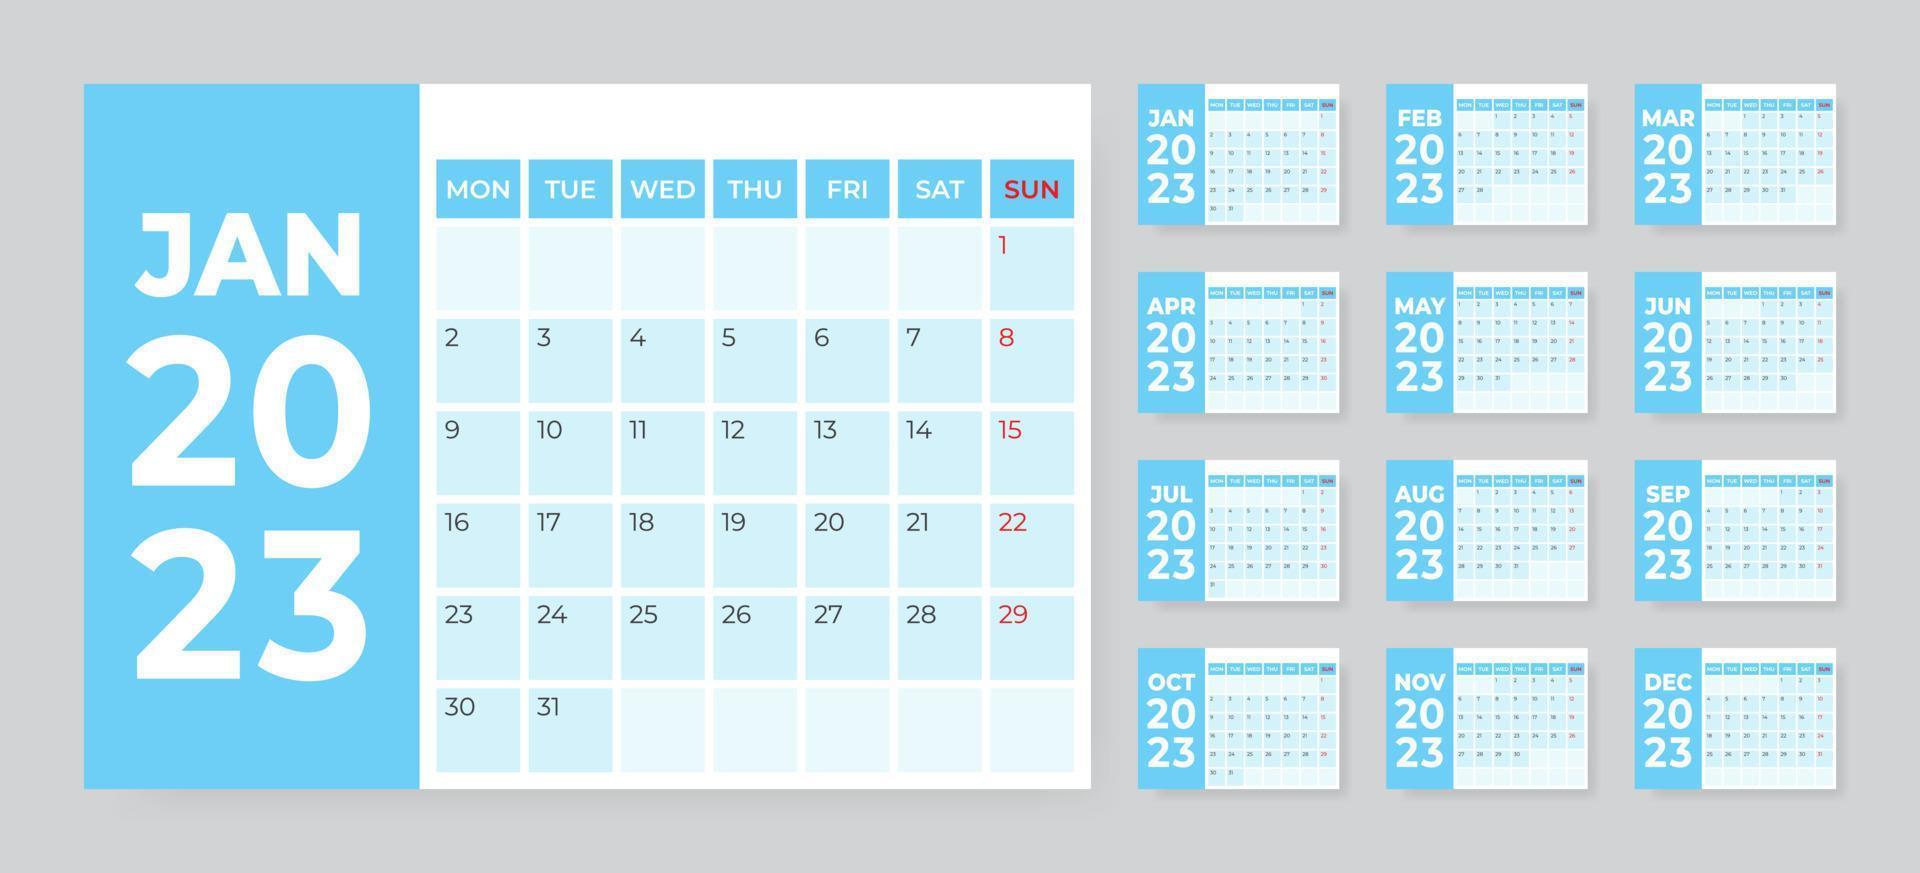 monatliche Tischkalendervorlage für das Jahr 2023. Woche beginnt am Montag vektor